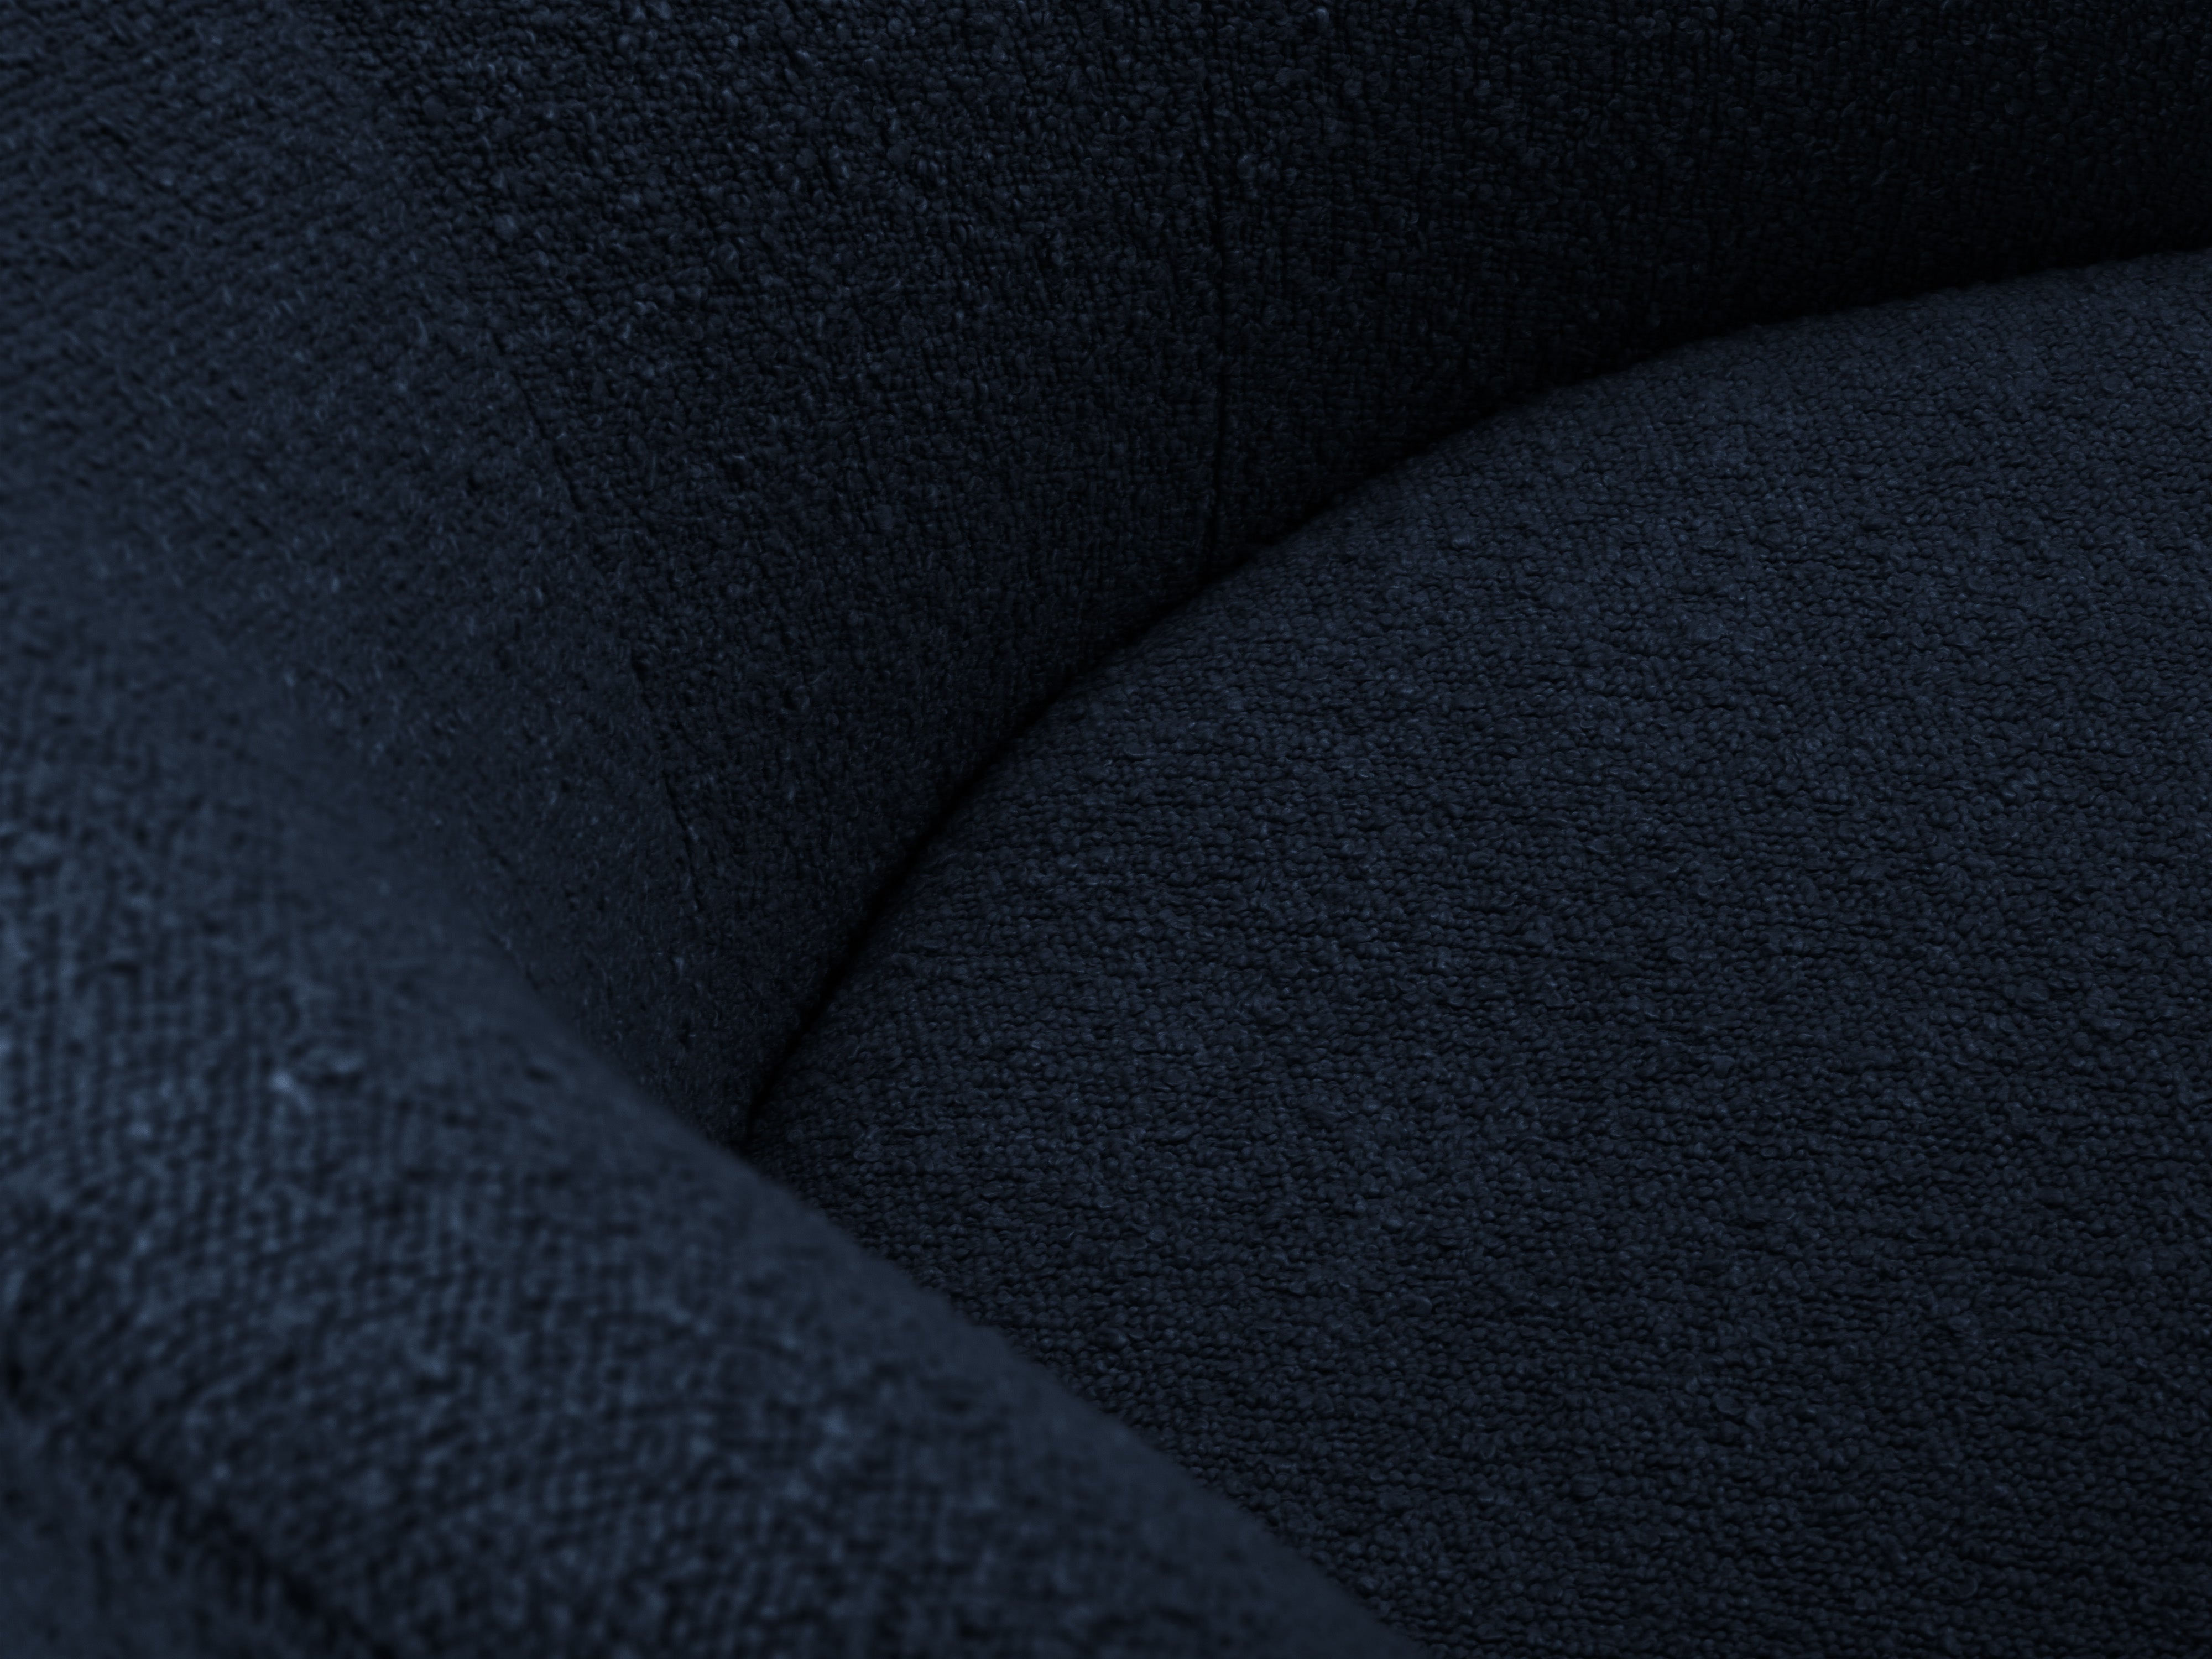 Sofa 3-osobowa CLOVE ciemnoniebieski boucle Mazzini Sofas    Eye on Design